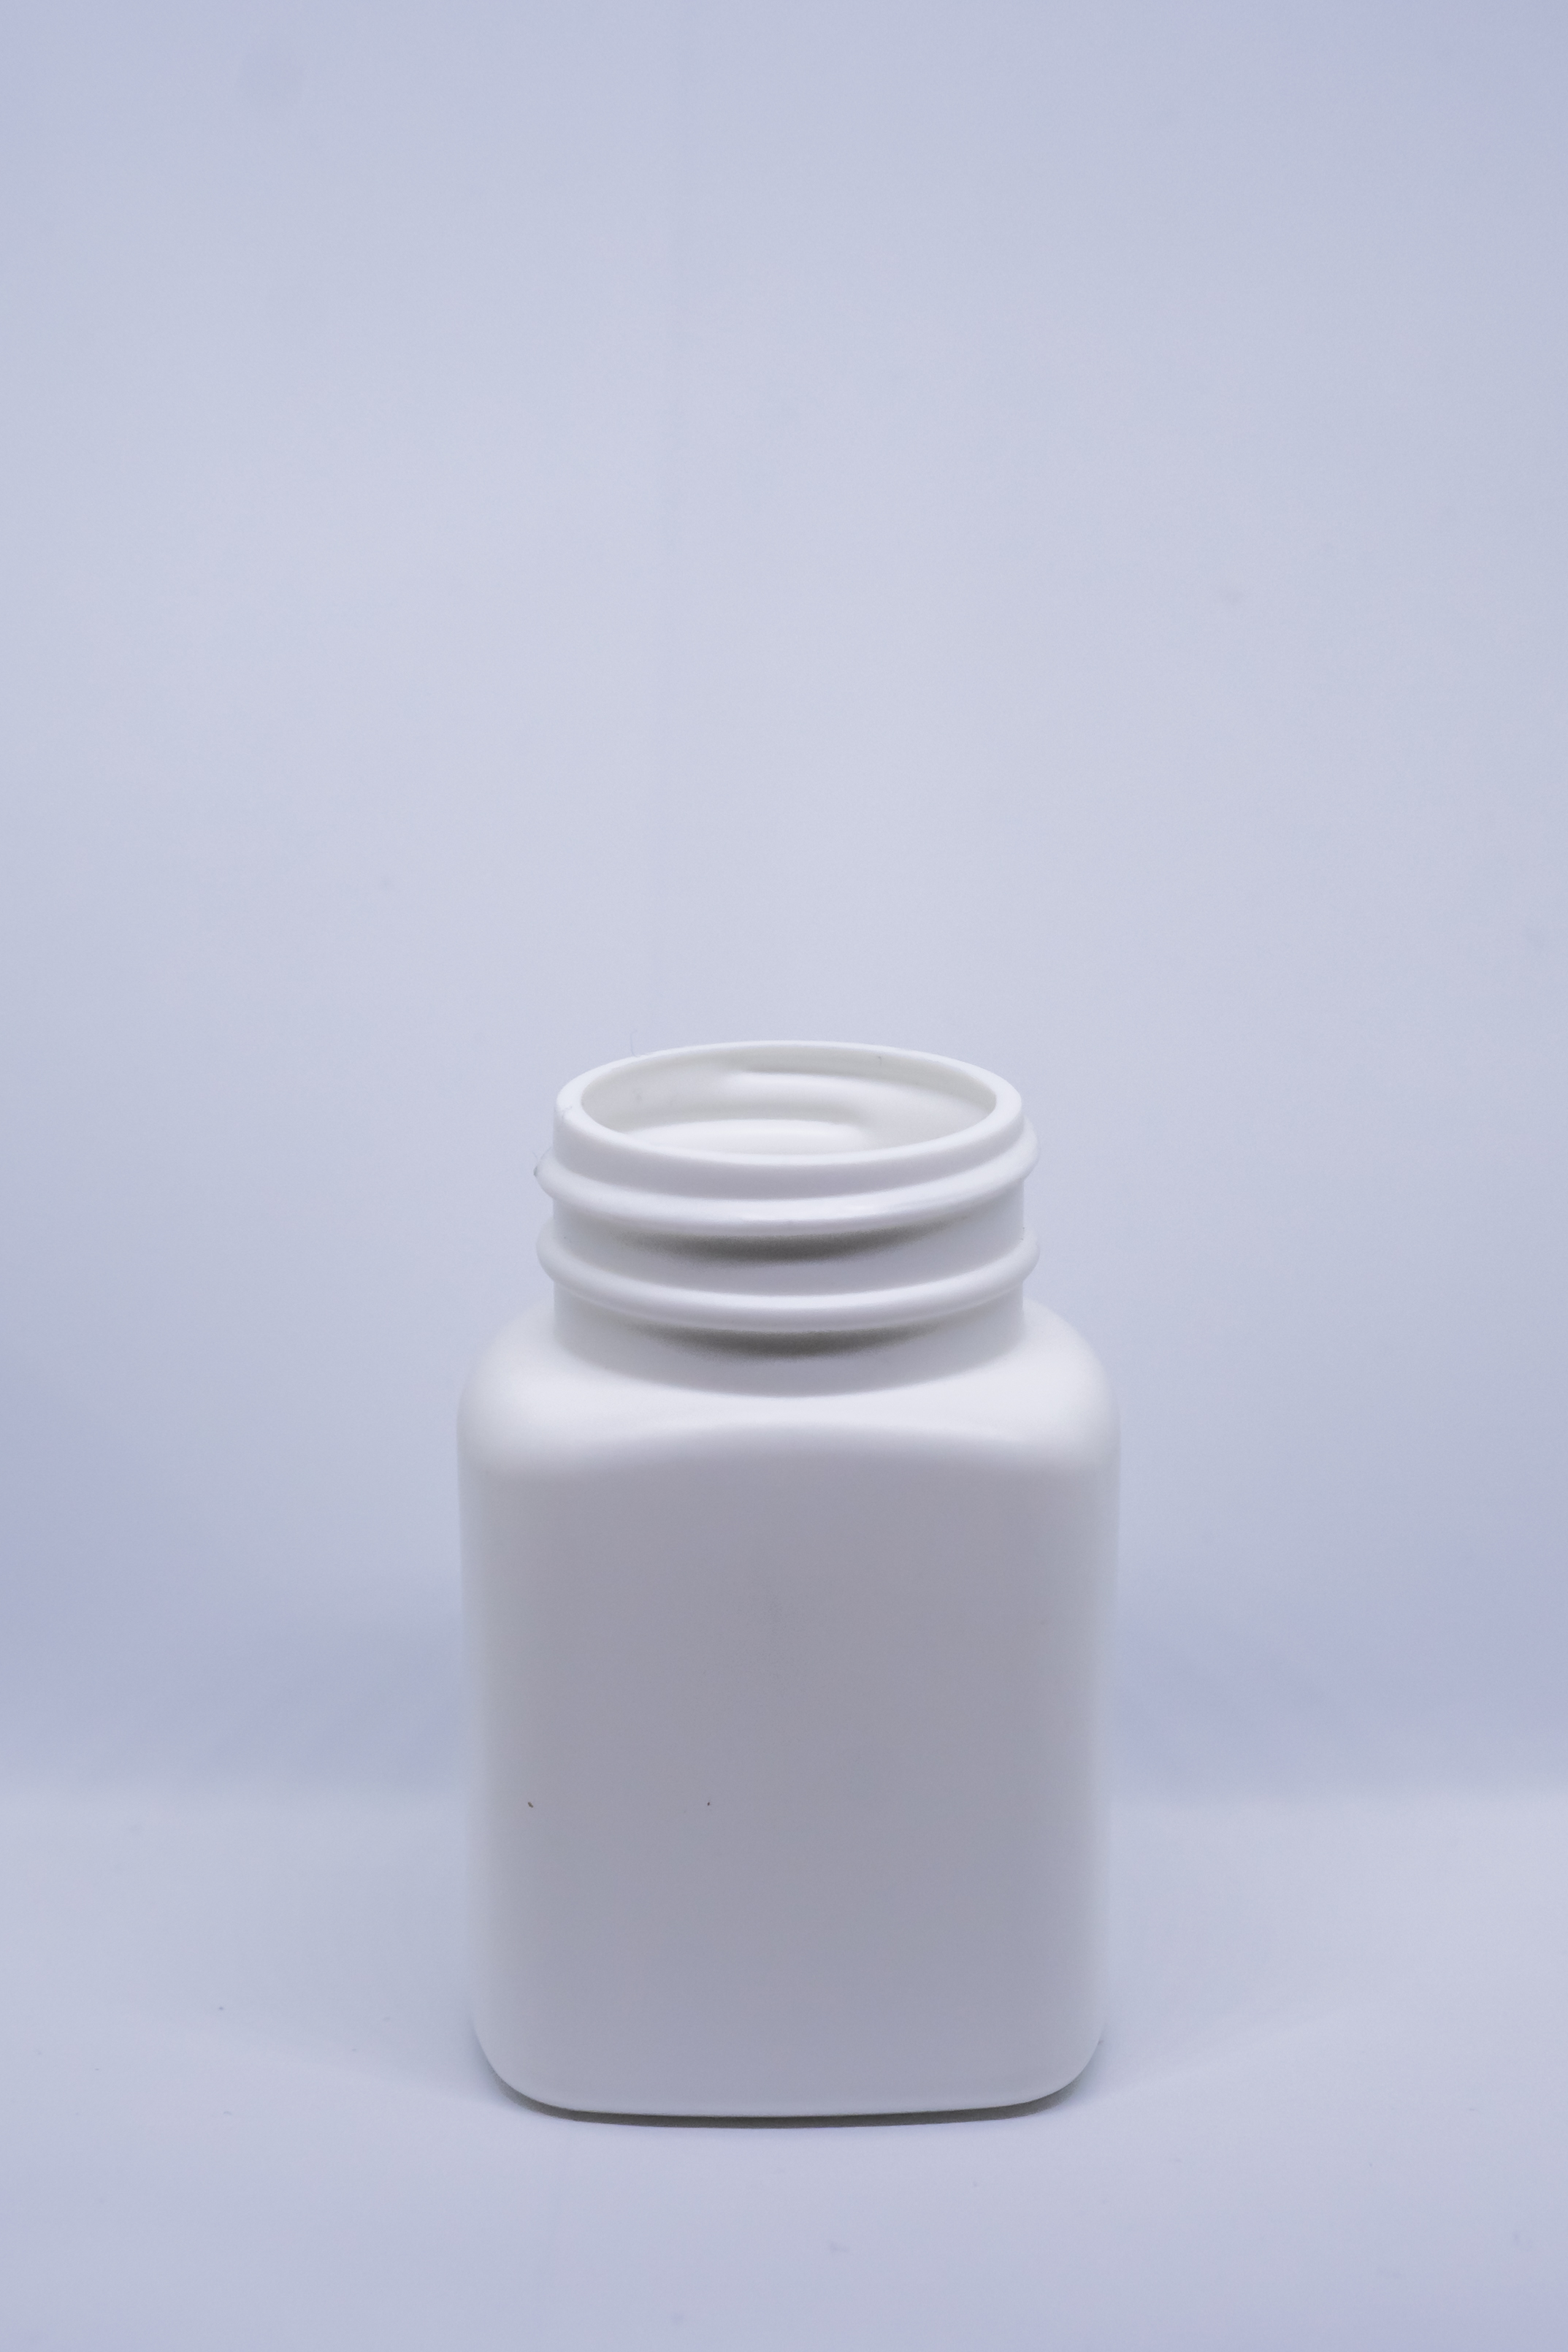 בקבוק מלבני 90 מ"ל HDPE פייה 38 מ"מ לבן